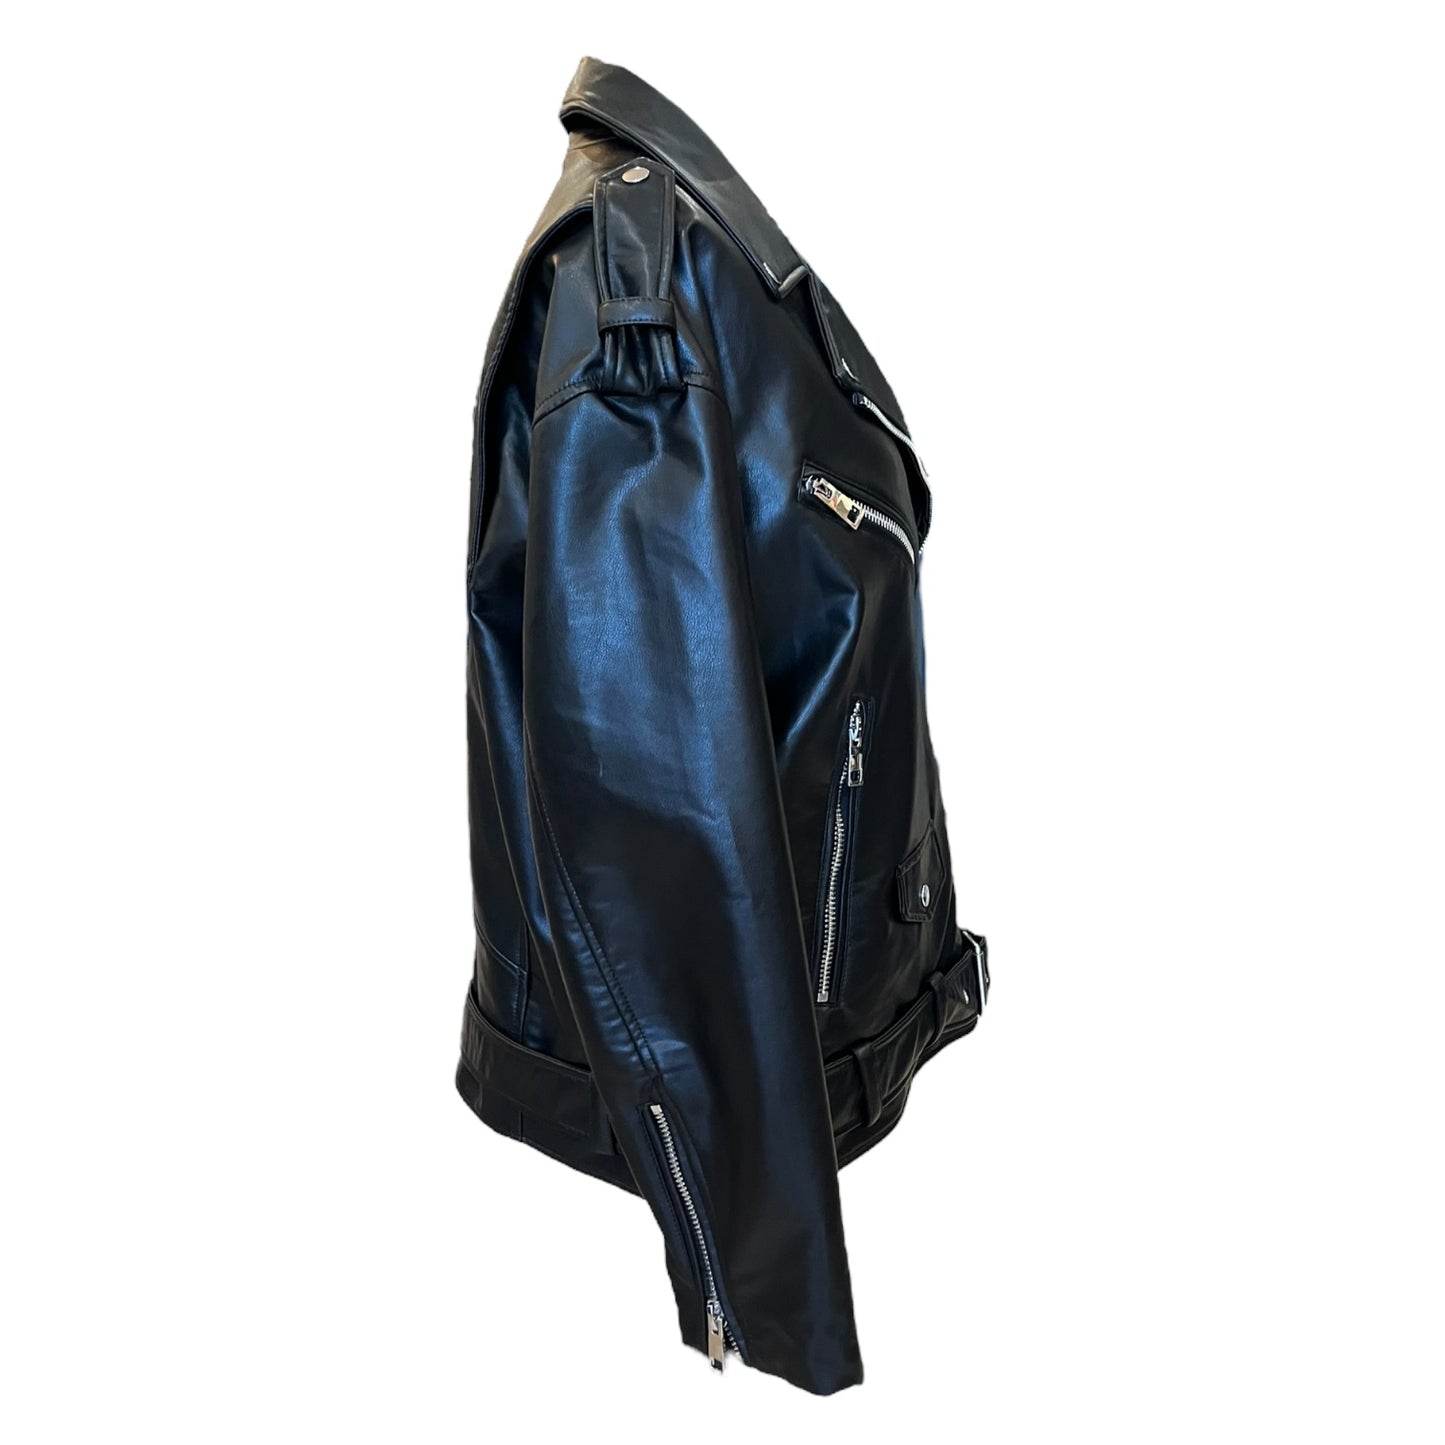 Zara Black Biker Jacket